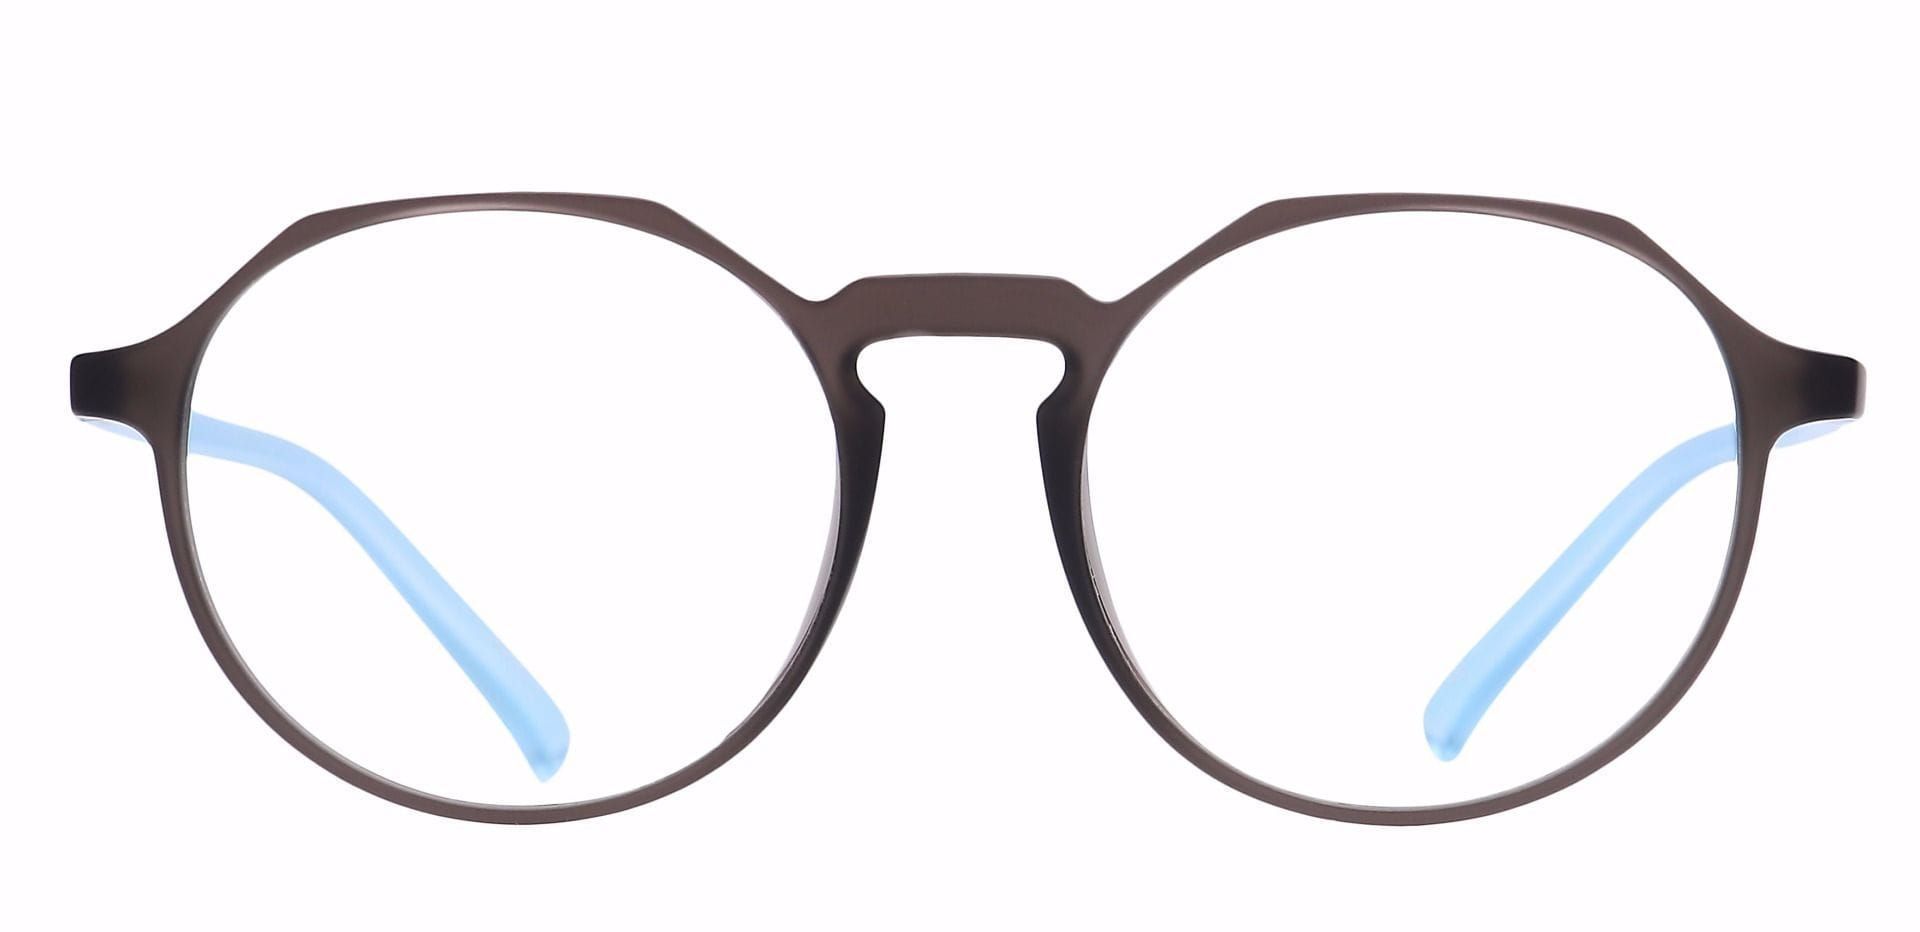 Paragon Oval Eyeglasses Frame - Blue